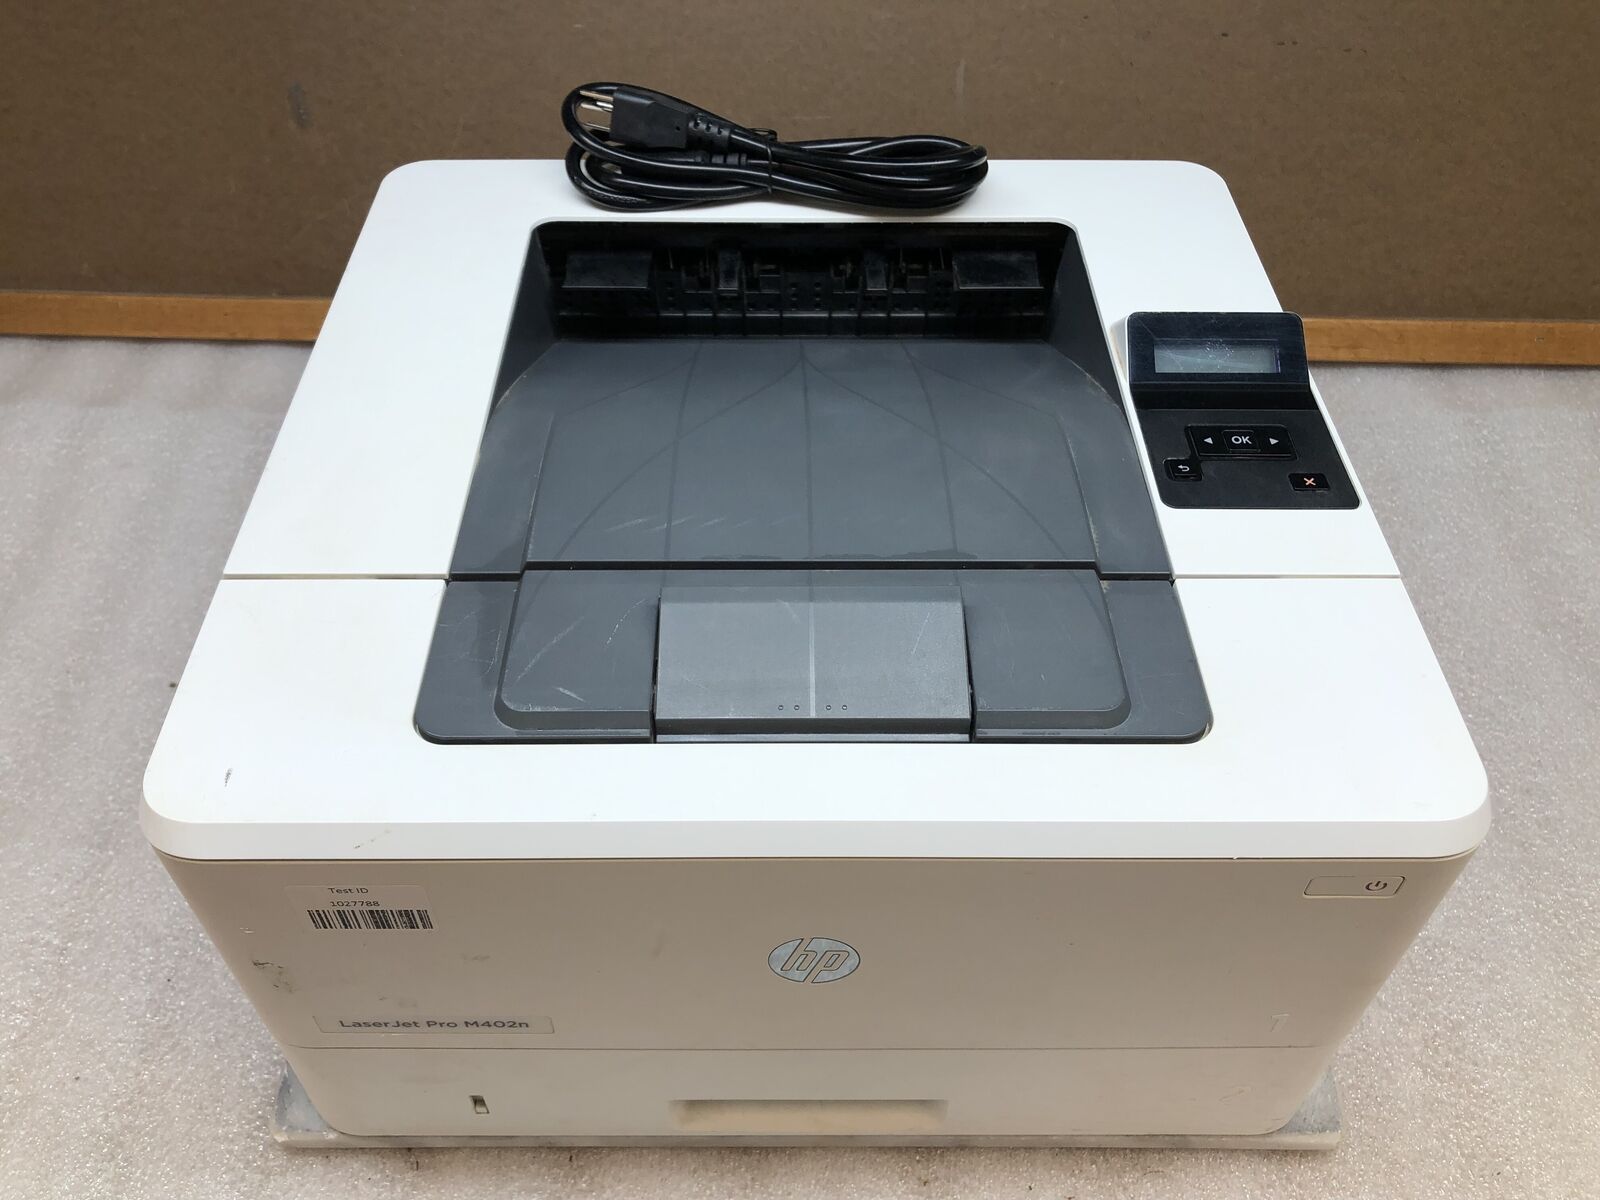 HP LaserJet Pro M402n Monochrome Laser Printer W/ Toner TESTED PG count 14020